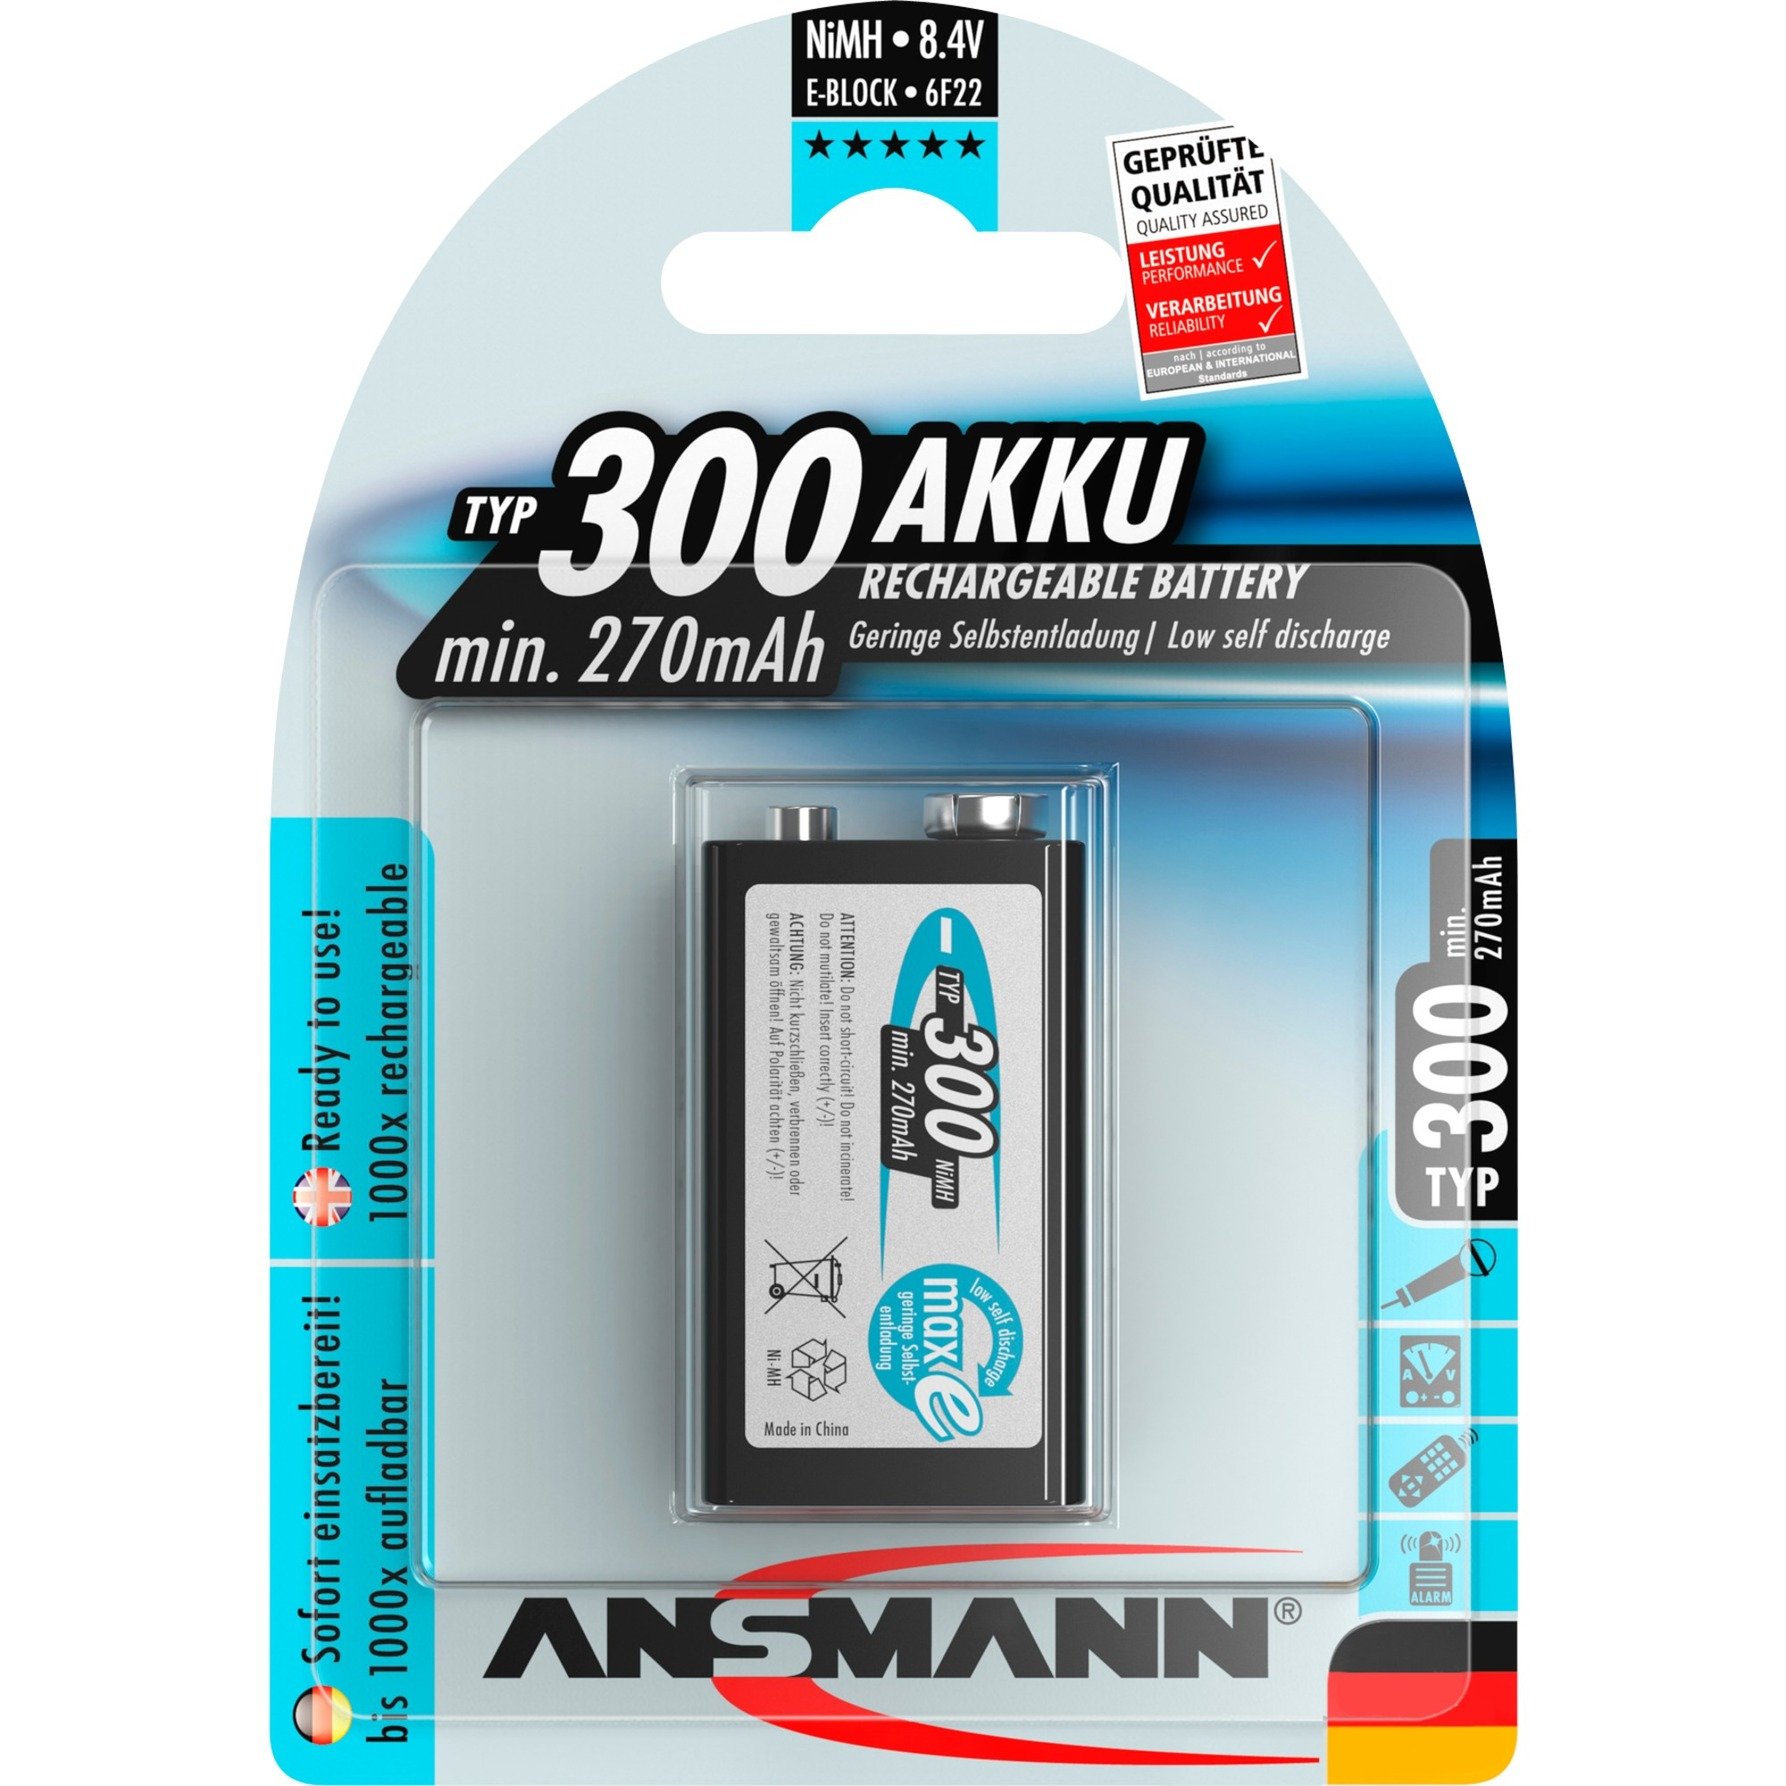 270mAh 9V E-Block maxE plus, Akku von Ansmann